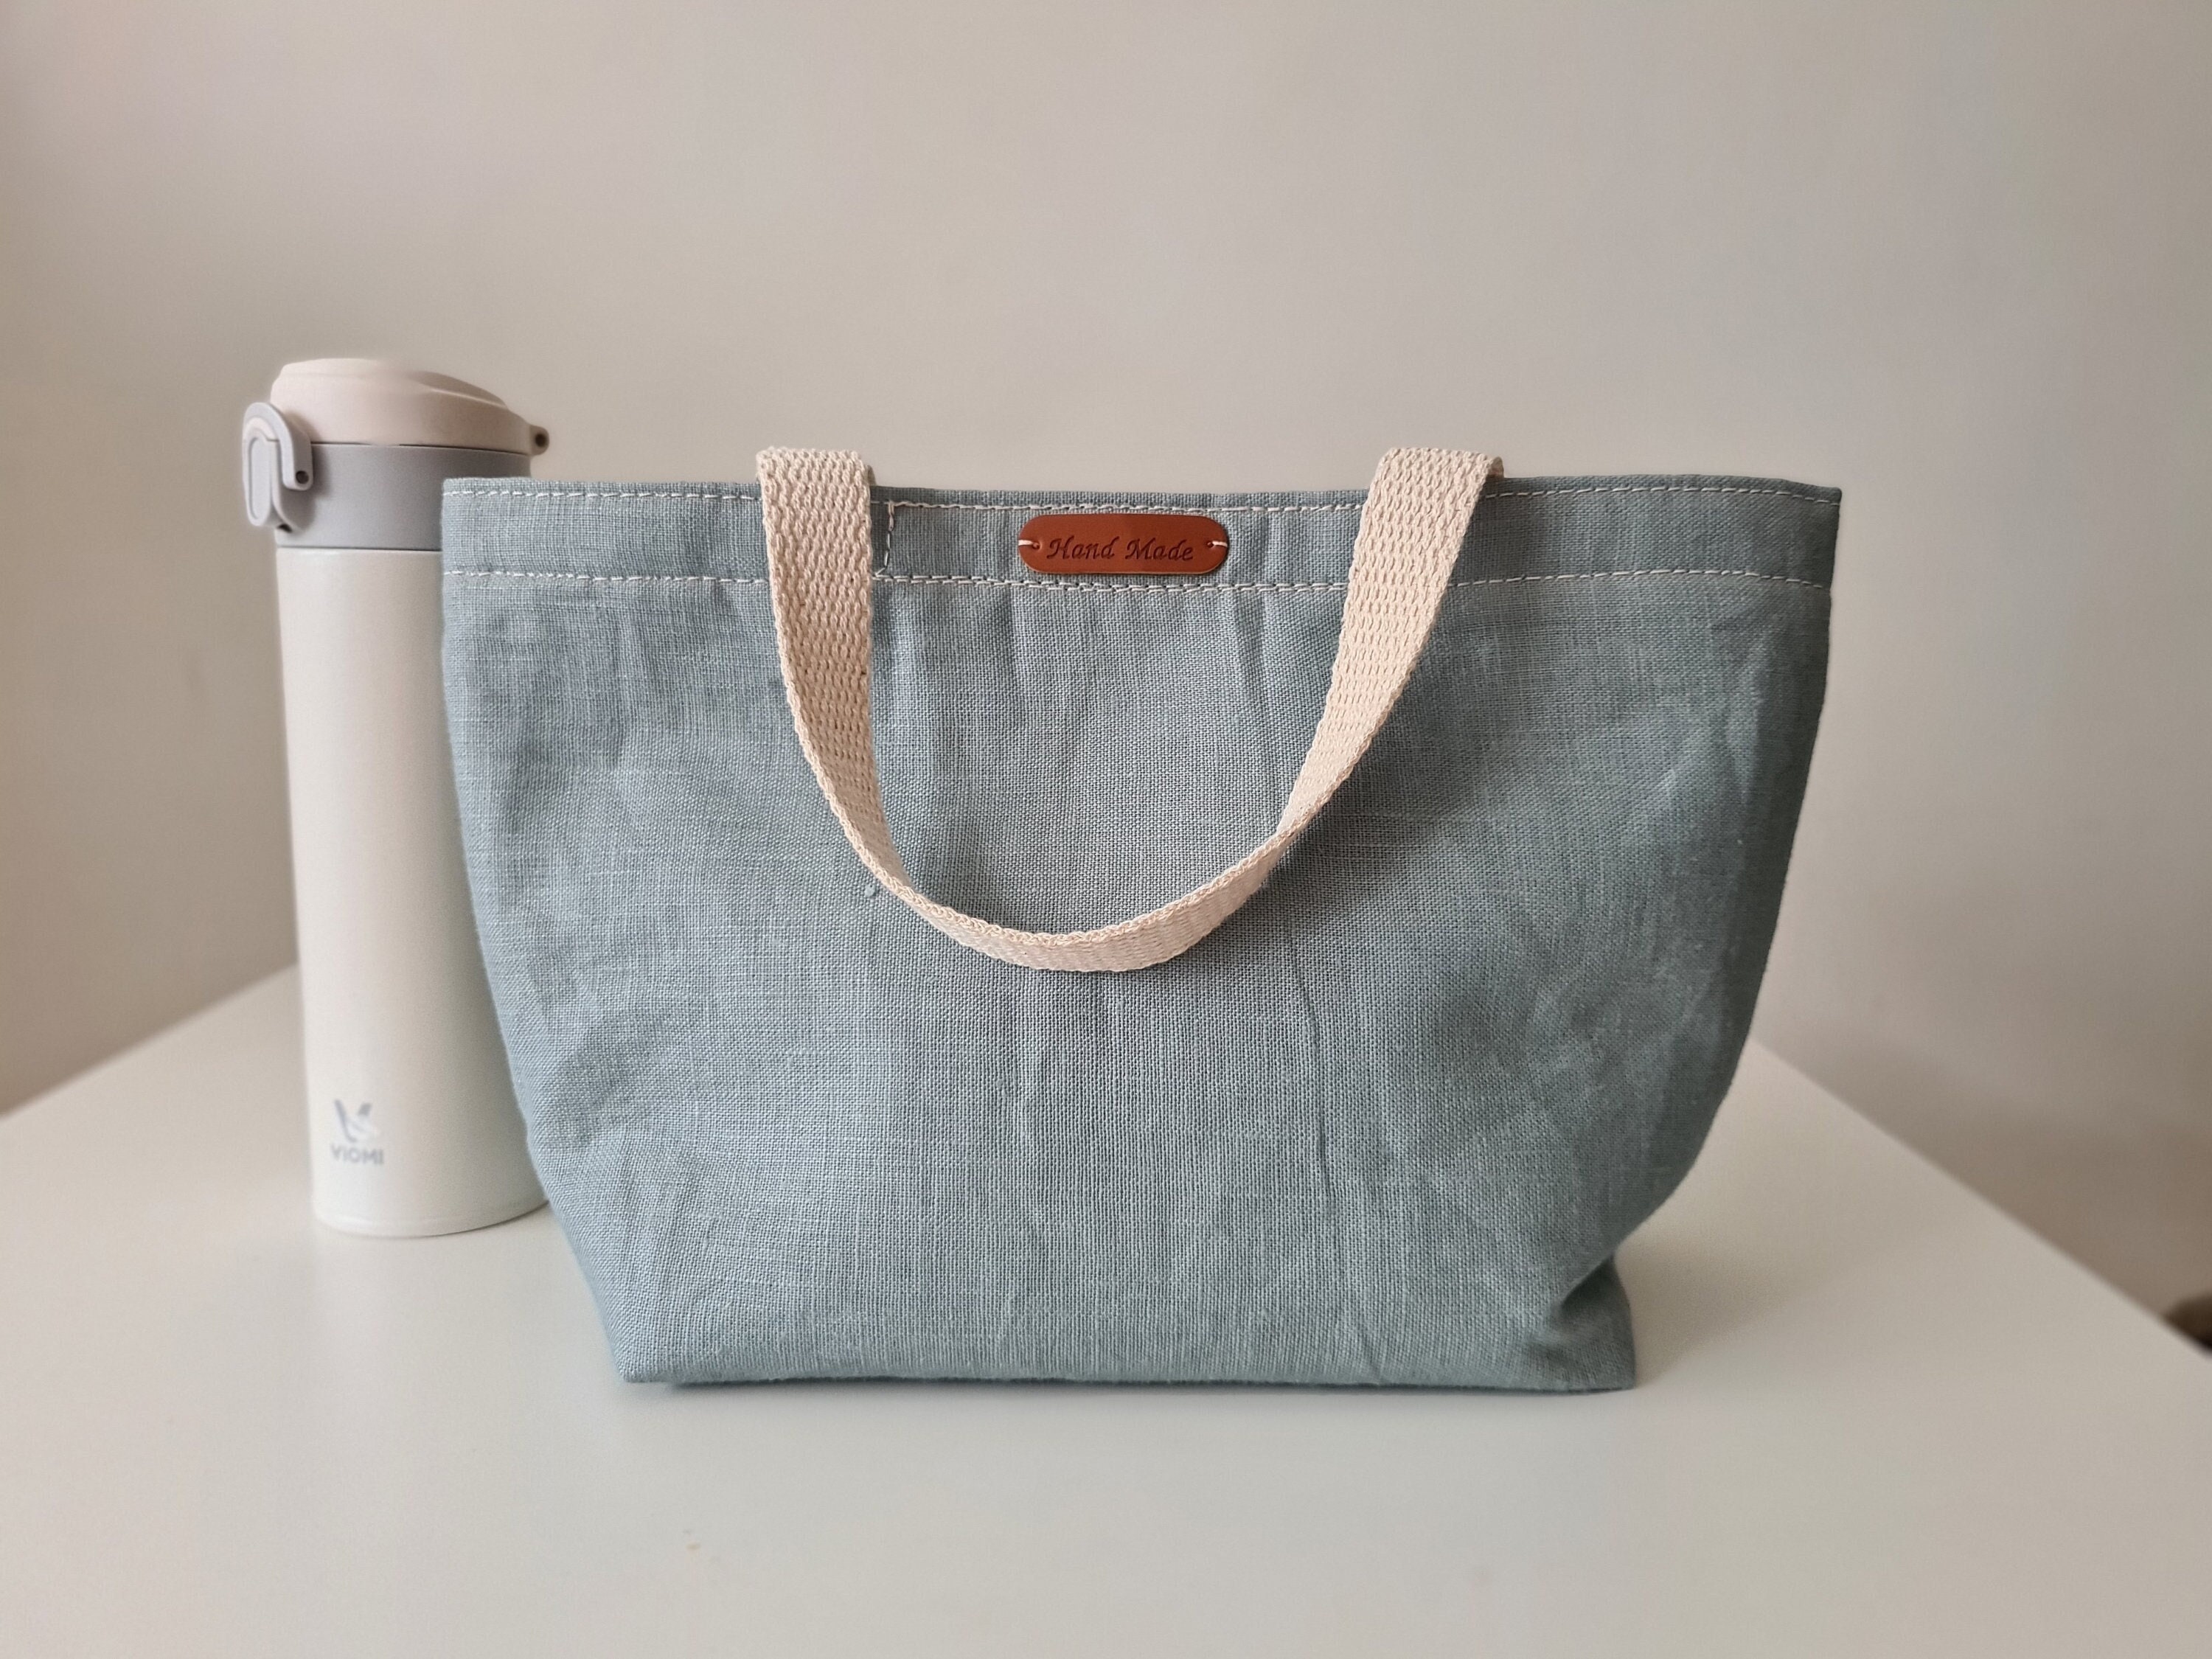 Organic Cotton Lunch Bag #tech #flow #gadget #gift #ideas #cool